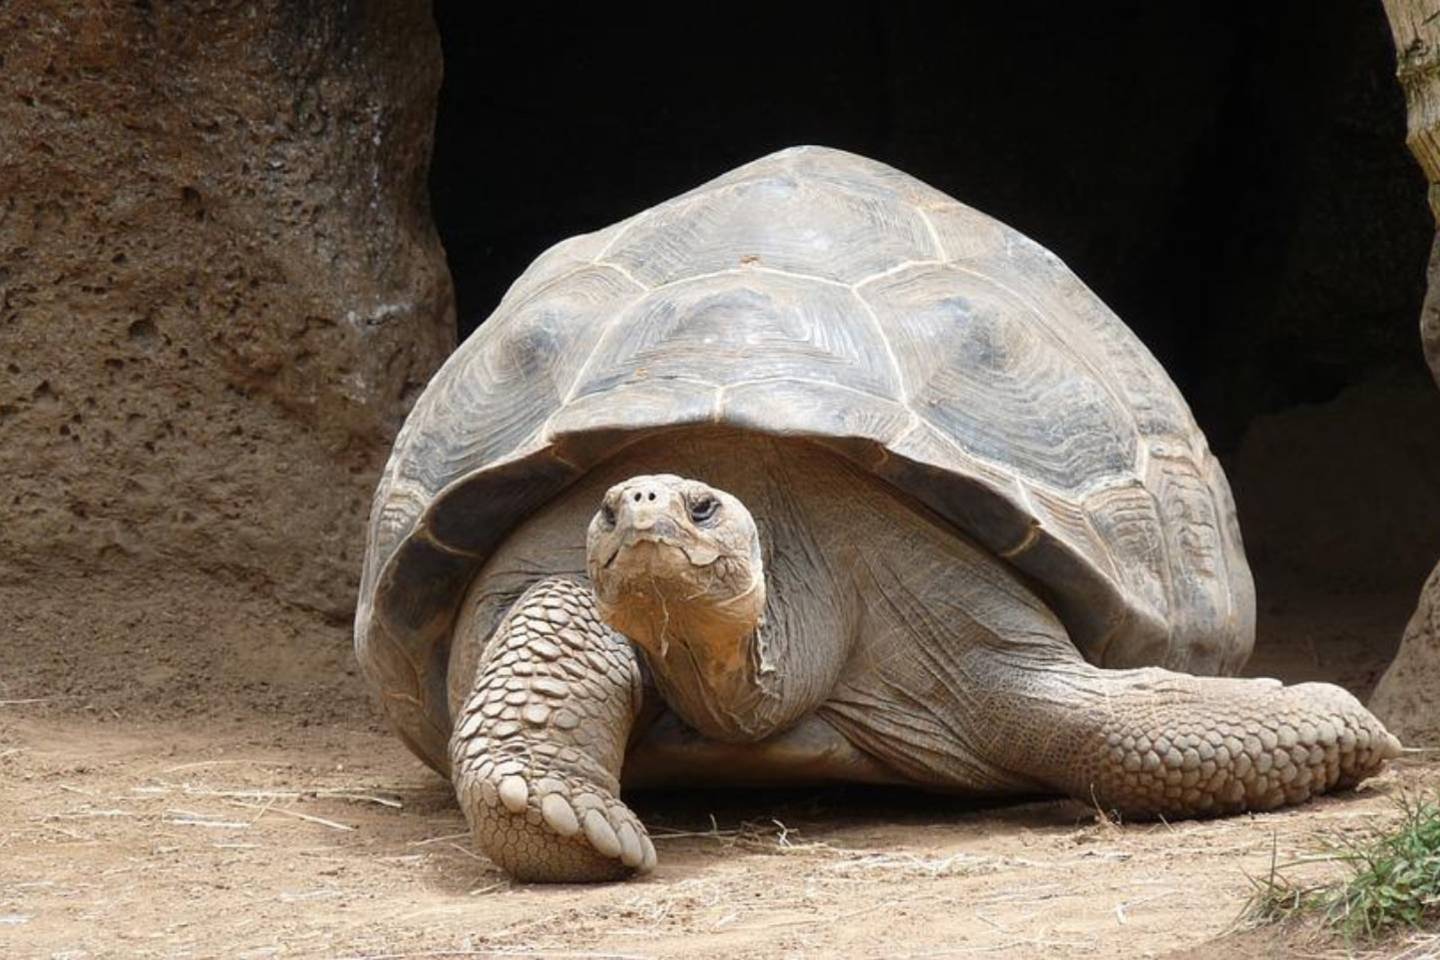 Новости мира / Интересные новости / Думали, что вымерла: черепаху редкого вида нашли на Галапагосах